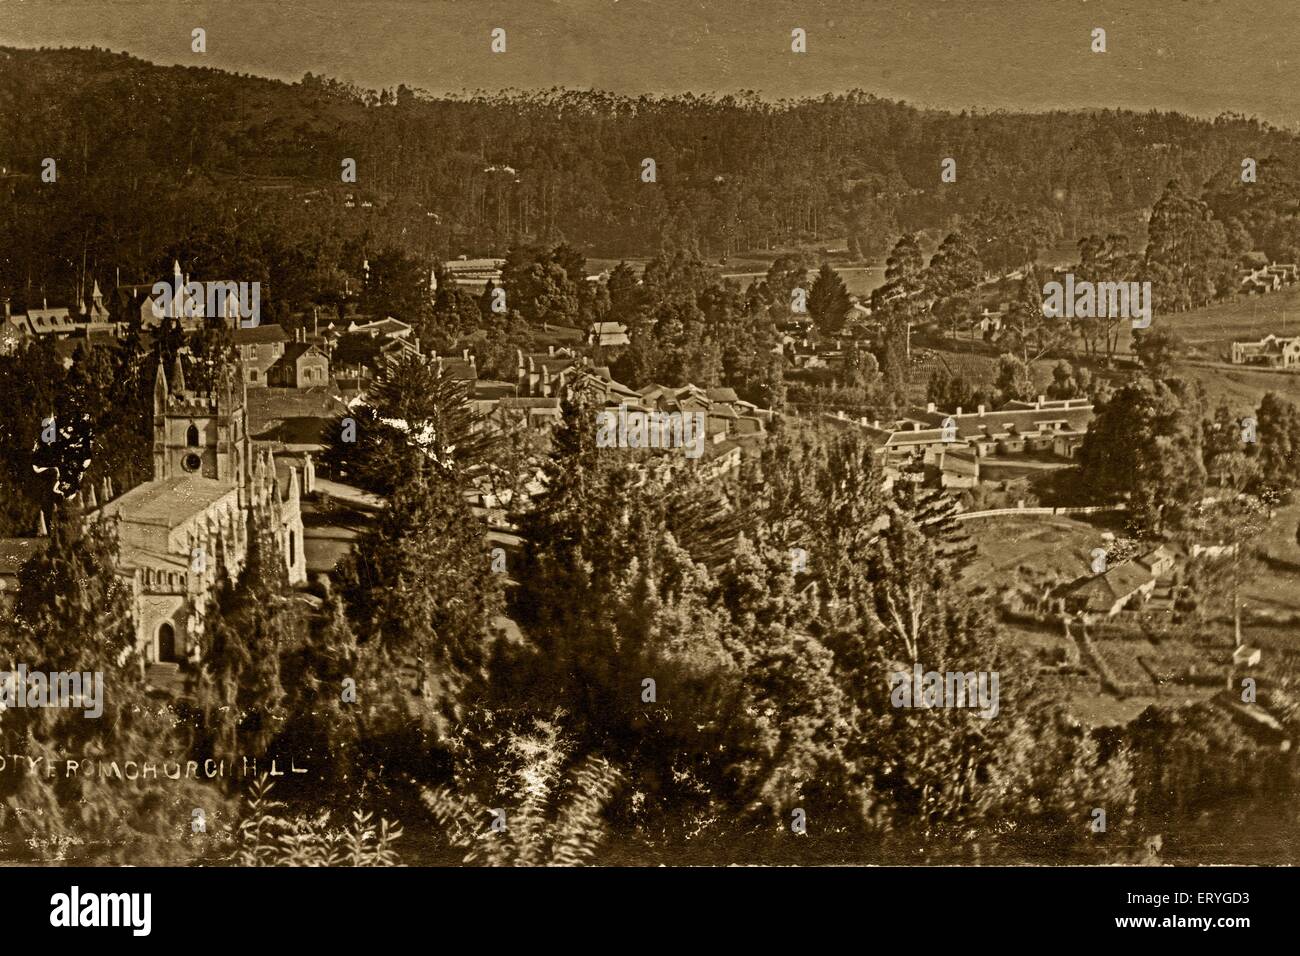 Ooty alte Stadt; alter Jahrgang 1900s Bild, Udagamandalam, Tamil Nadu; Indien, asien Stockfoto